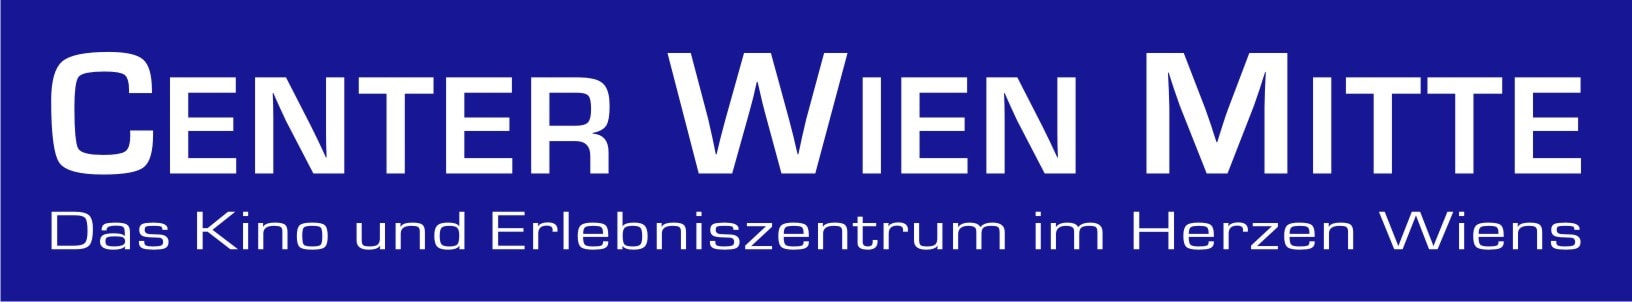 Logo des Centers Wien Mitte